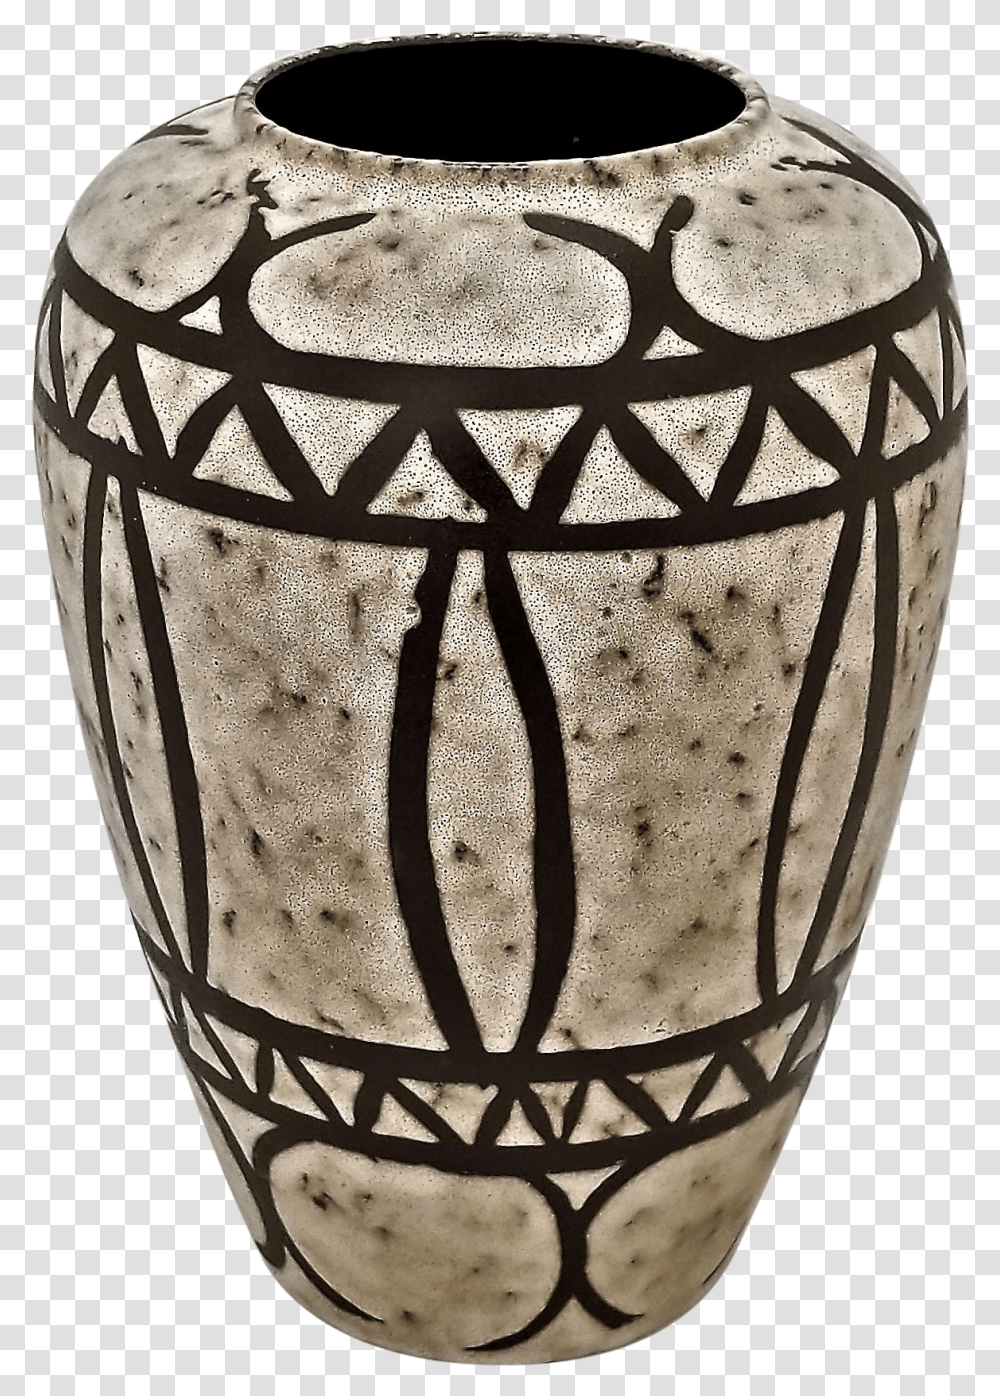 Modern Geometric Patterns Pottery Vase, Glass, Jar, Goblet, Urn Transparent Png